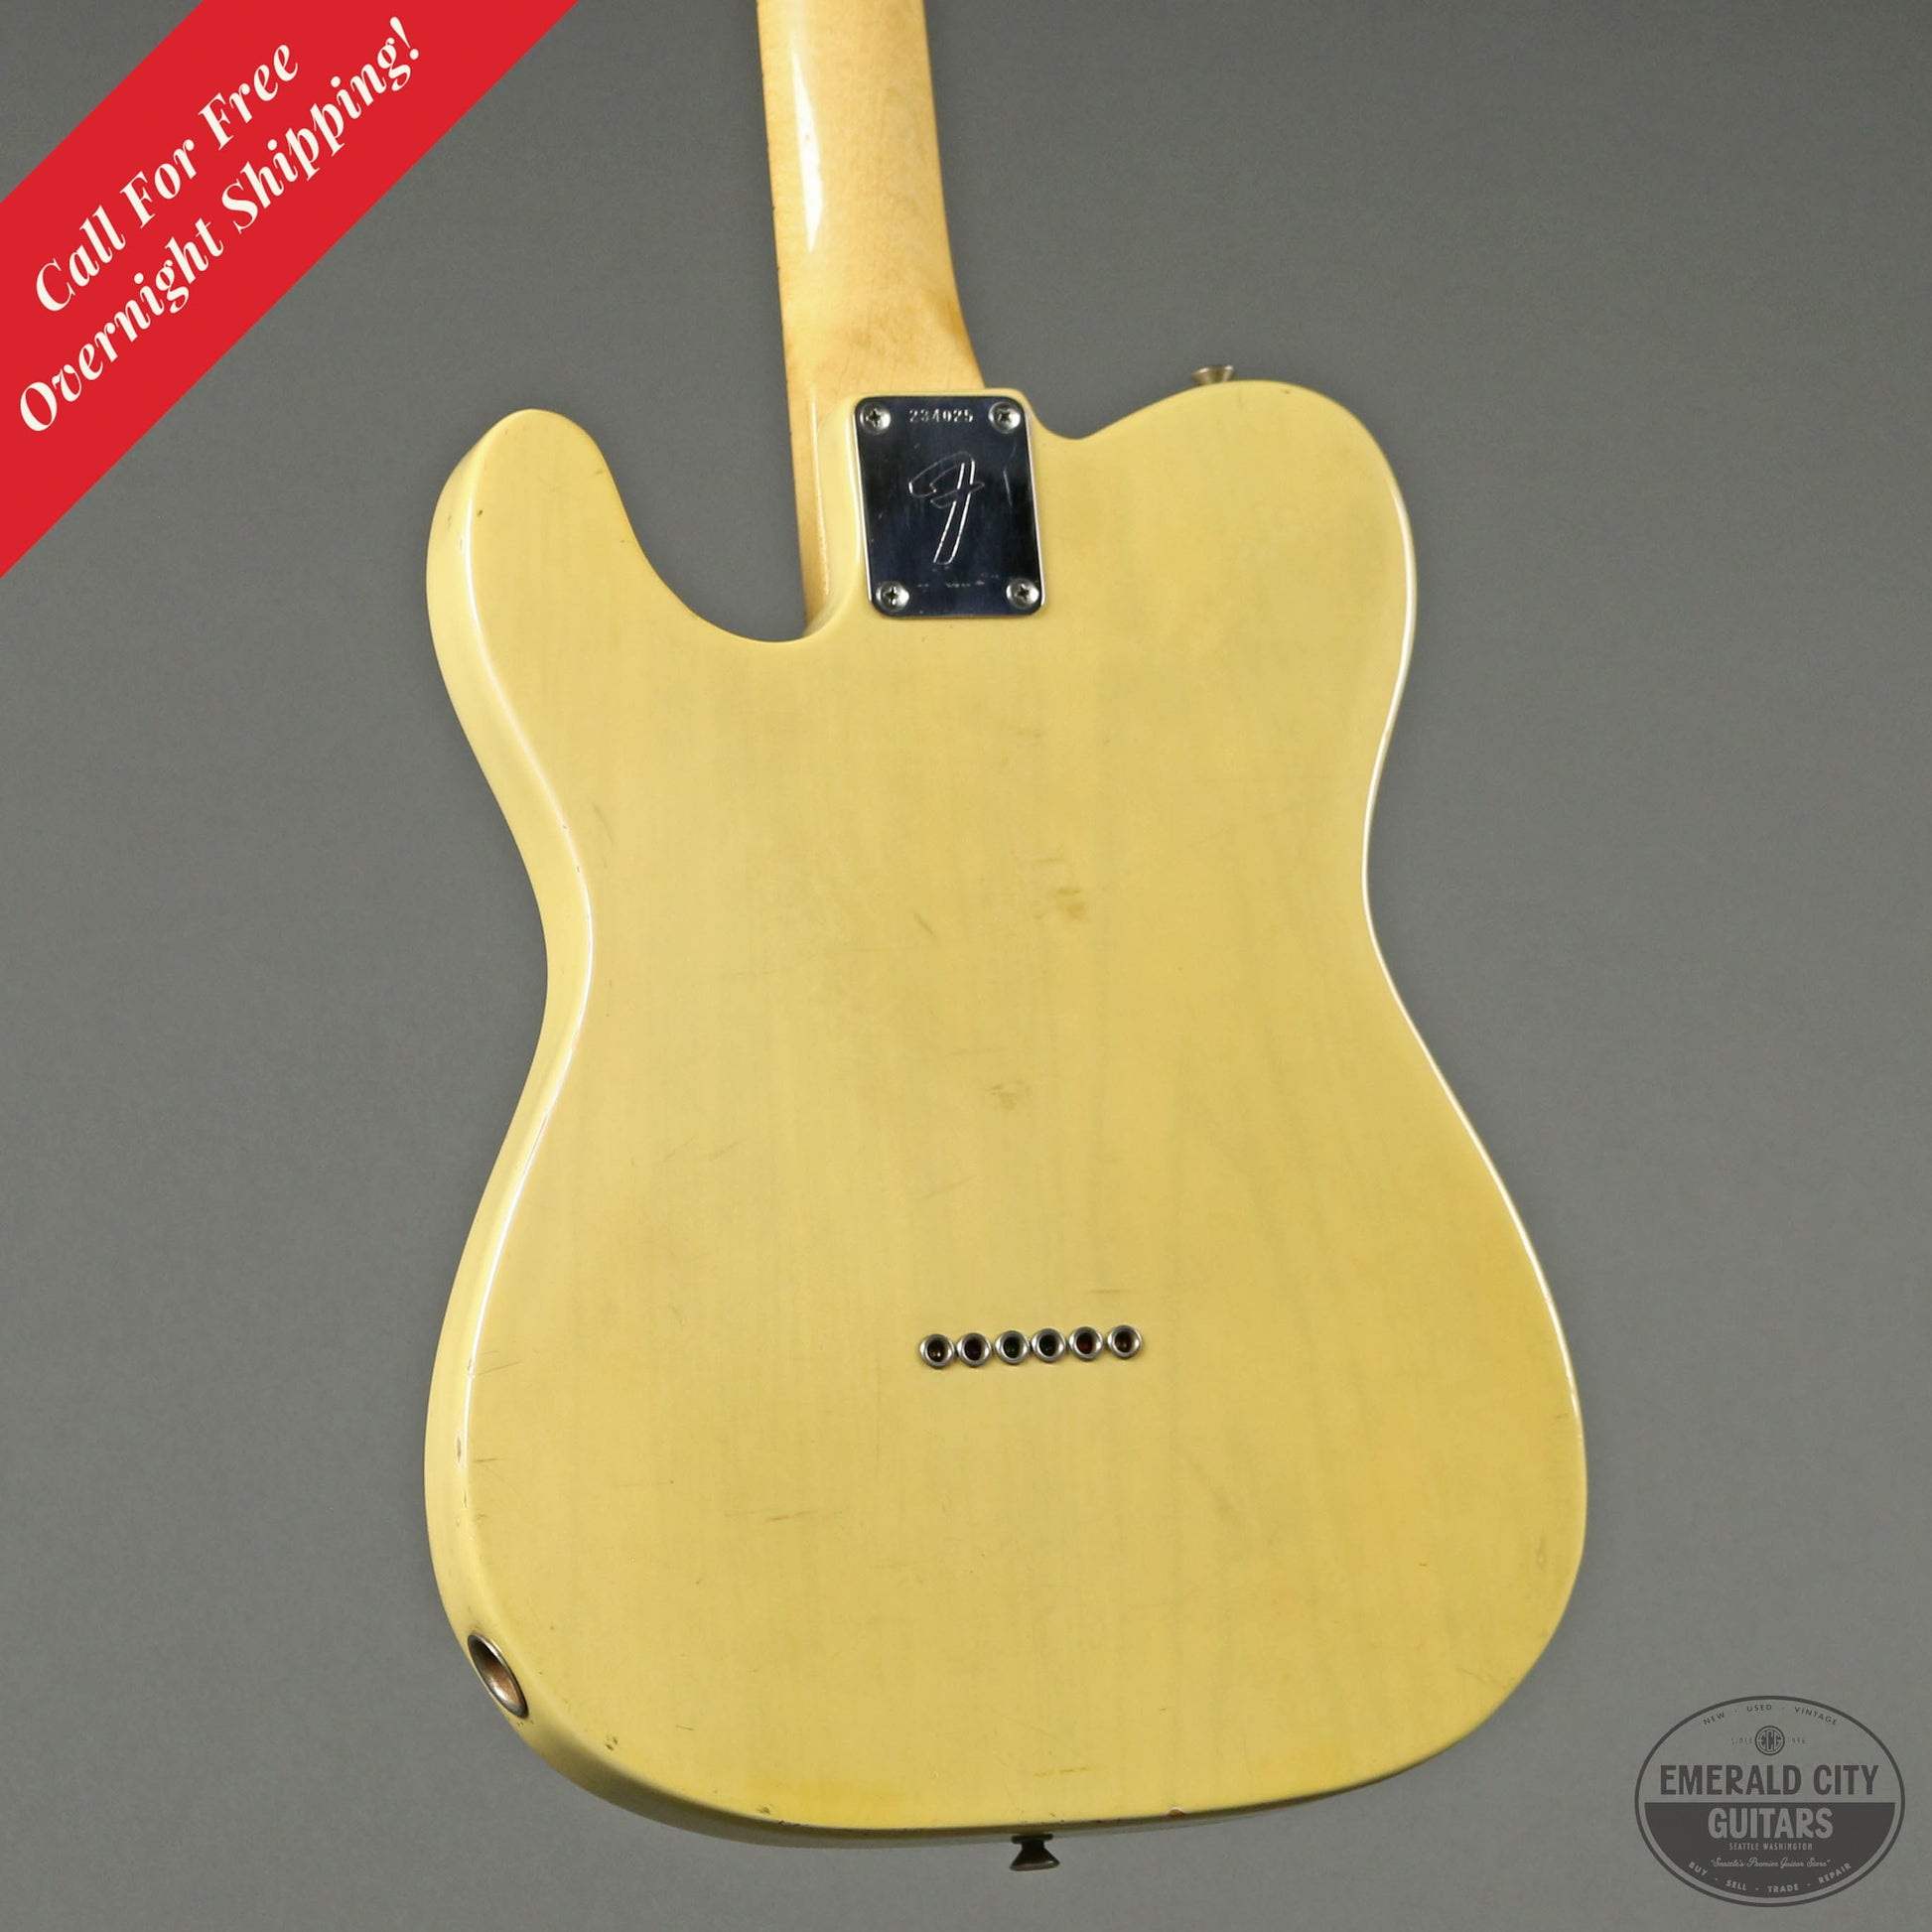 1968 Fender Telecaster City Guitars